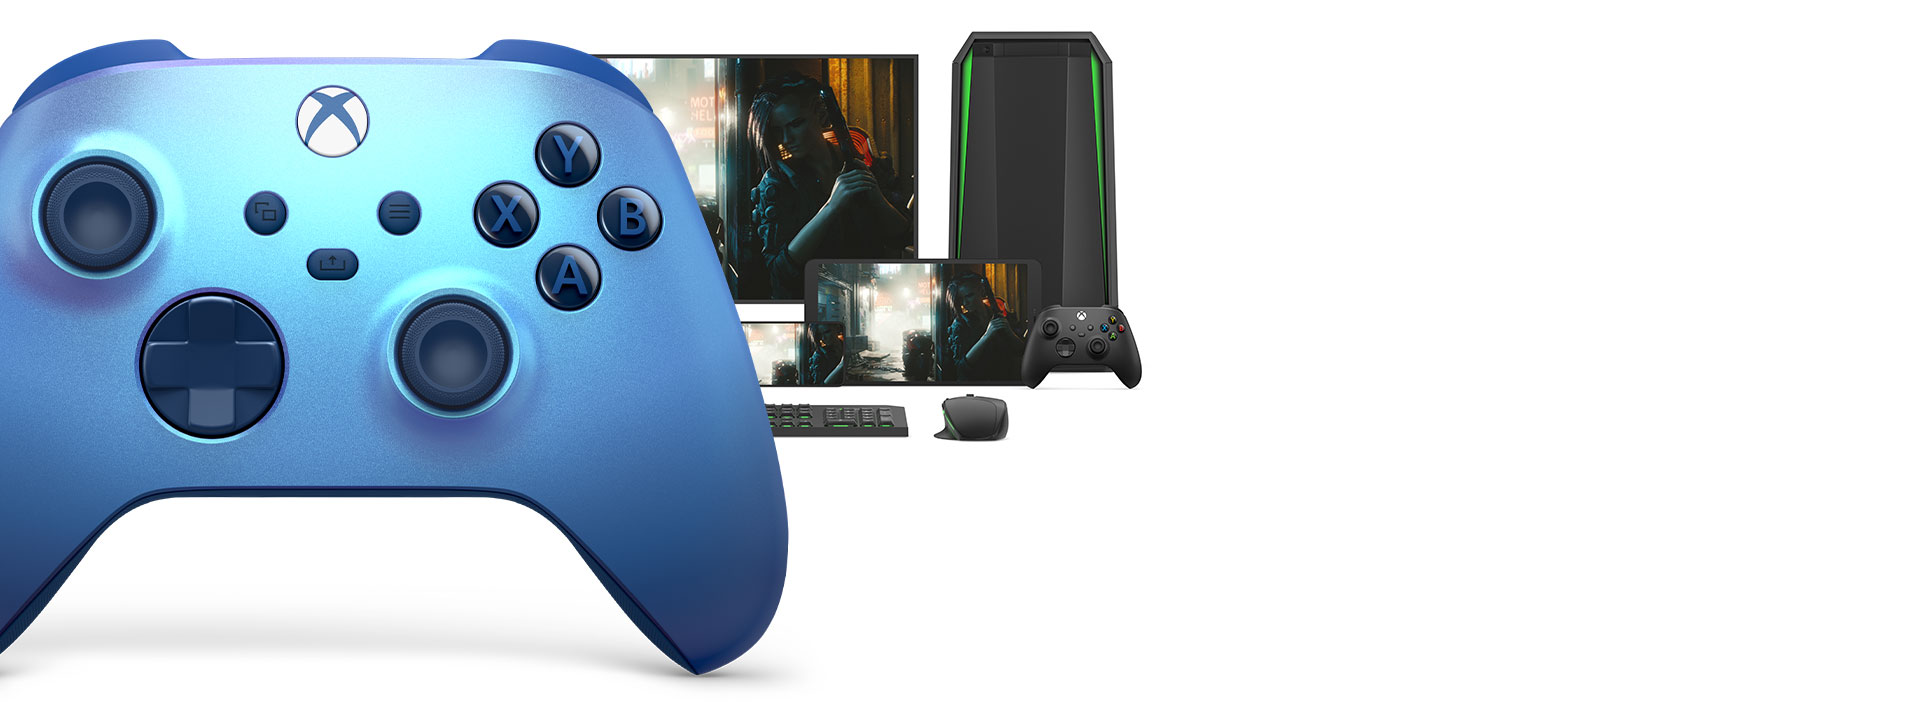 Xbox Wireless Controller – Aqua Shift Special Edition | Xbox